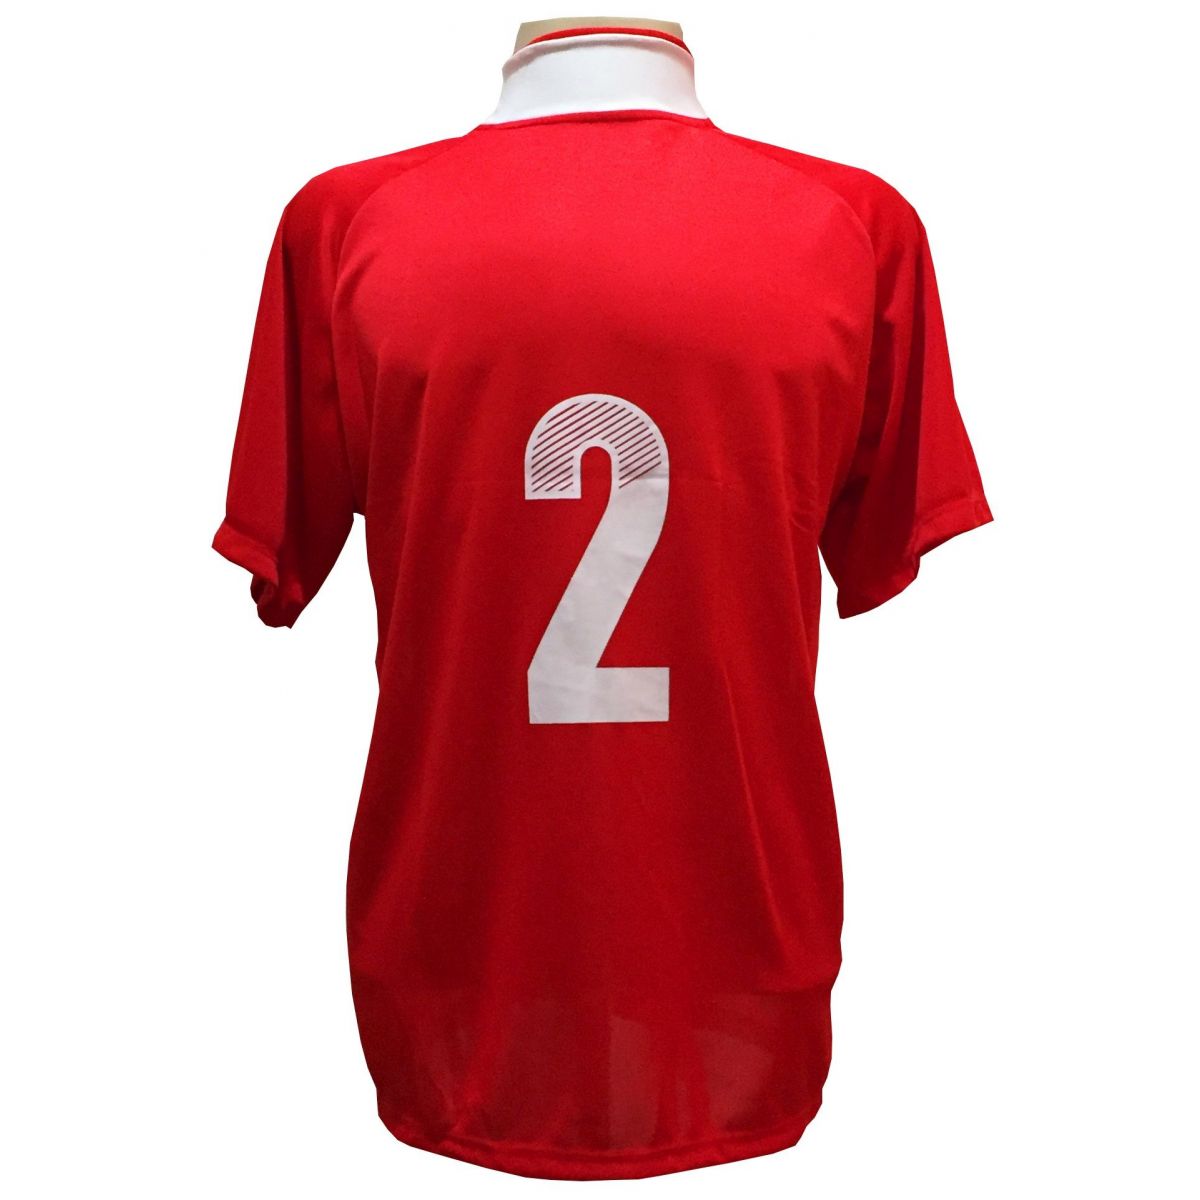 Fardamento modelo Milan 12+1 (12 Camisas Vermelho/Branco + 12 Calções Royal/Branco + 13 Pares de Meiões + 1 Conjunto de Goleiro) + Brindes